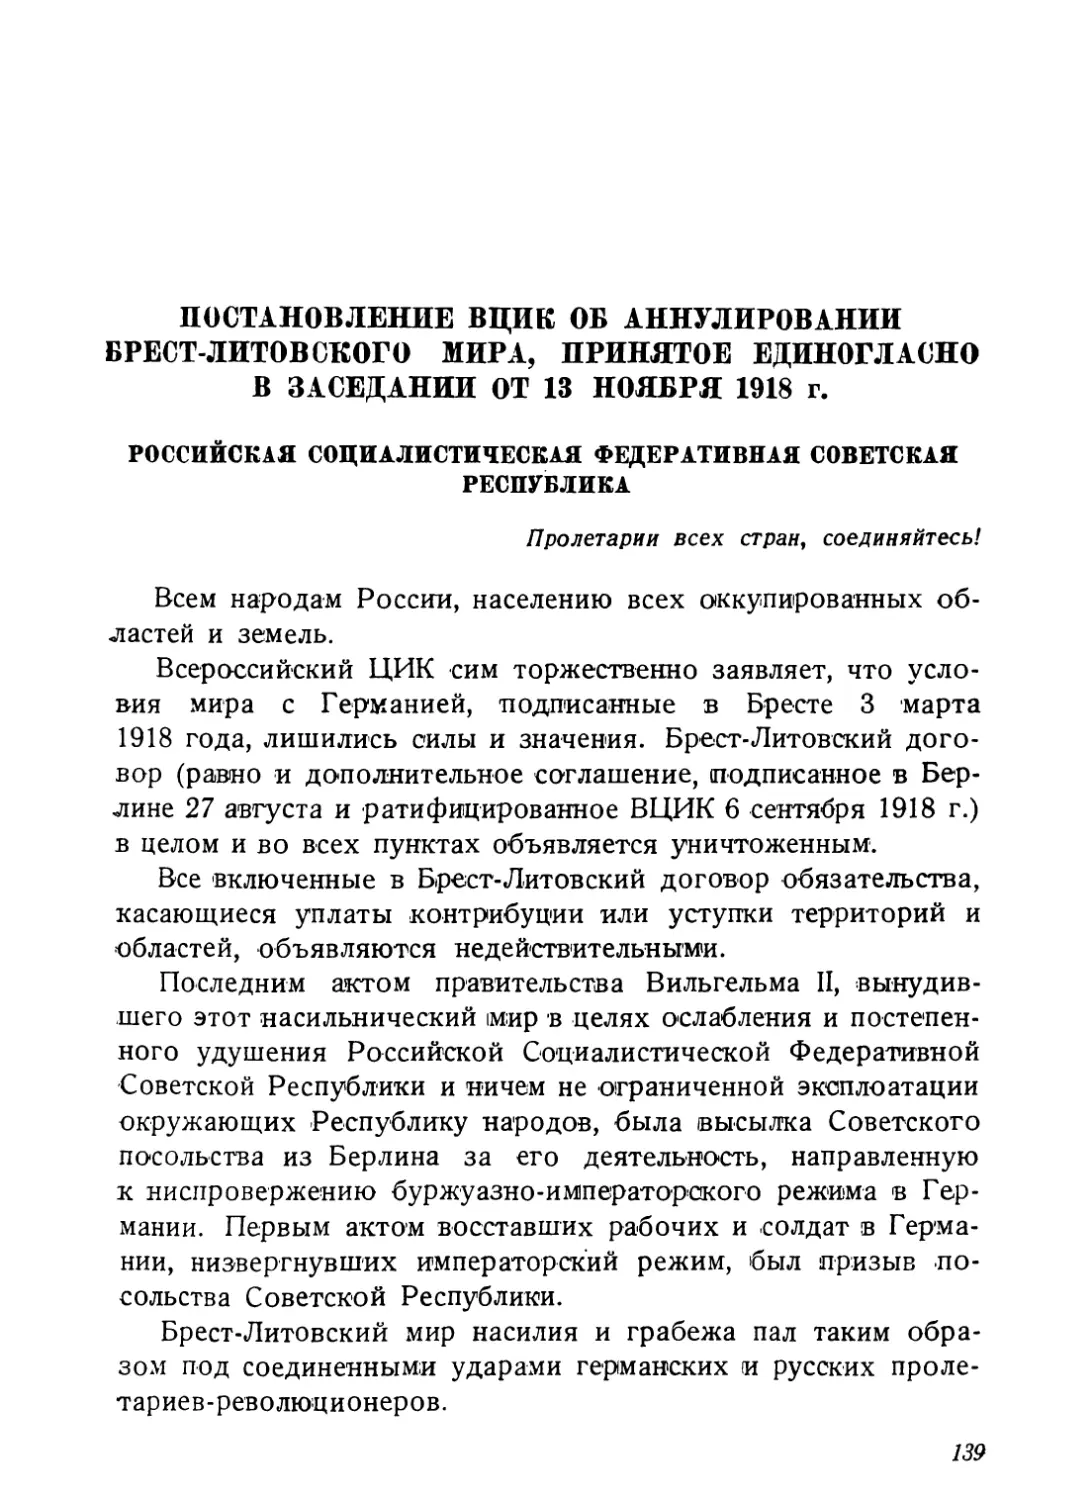 Постановление ВЦИК об аннулировании Брест-Литовского мира, принятое единогласно на заседании от 13 ноября 1918 г